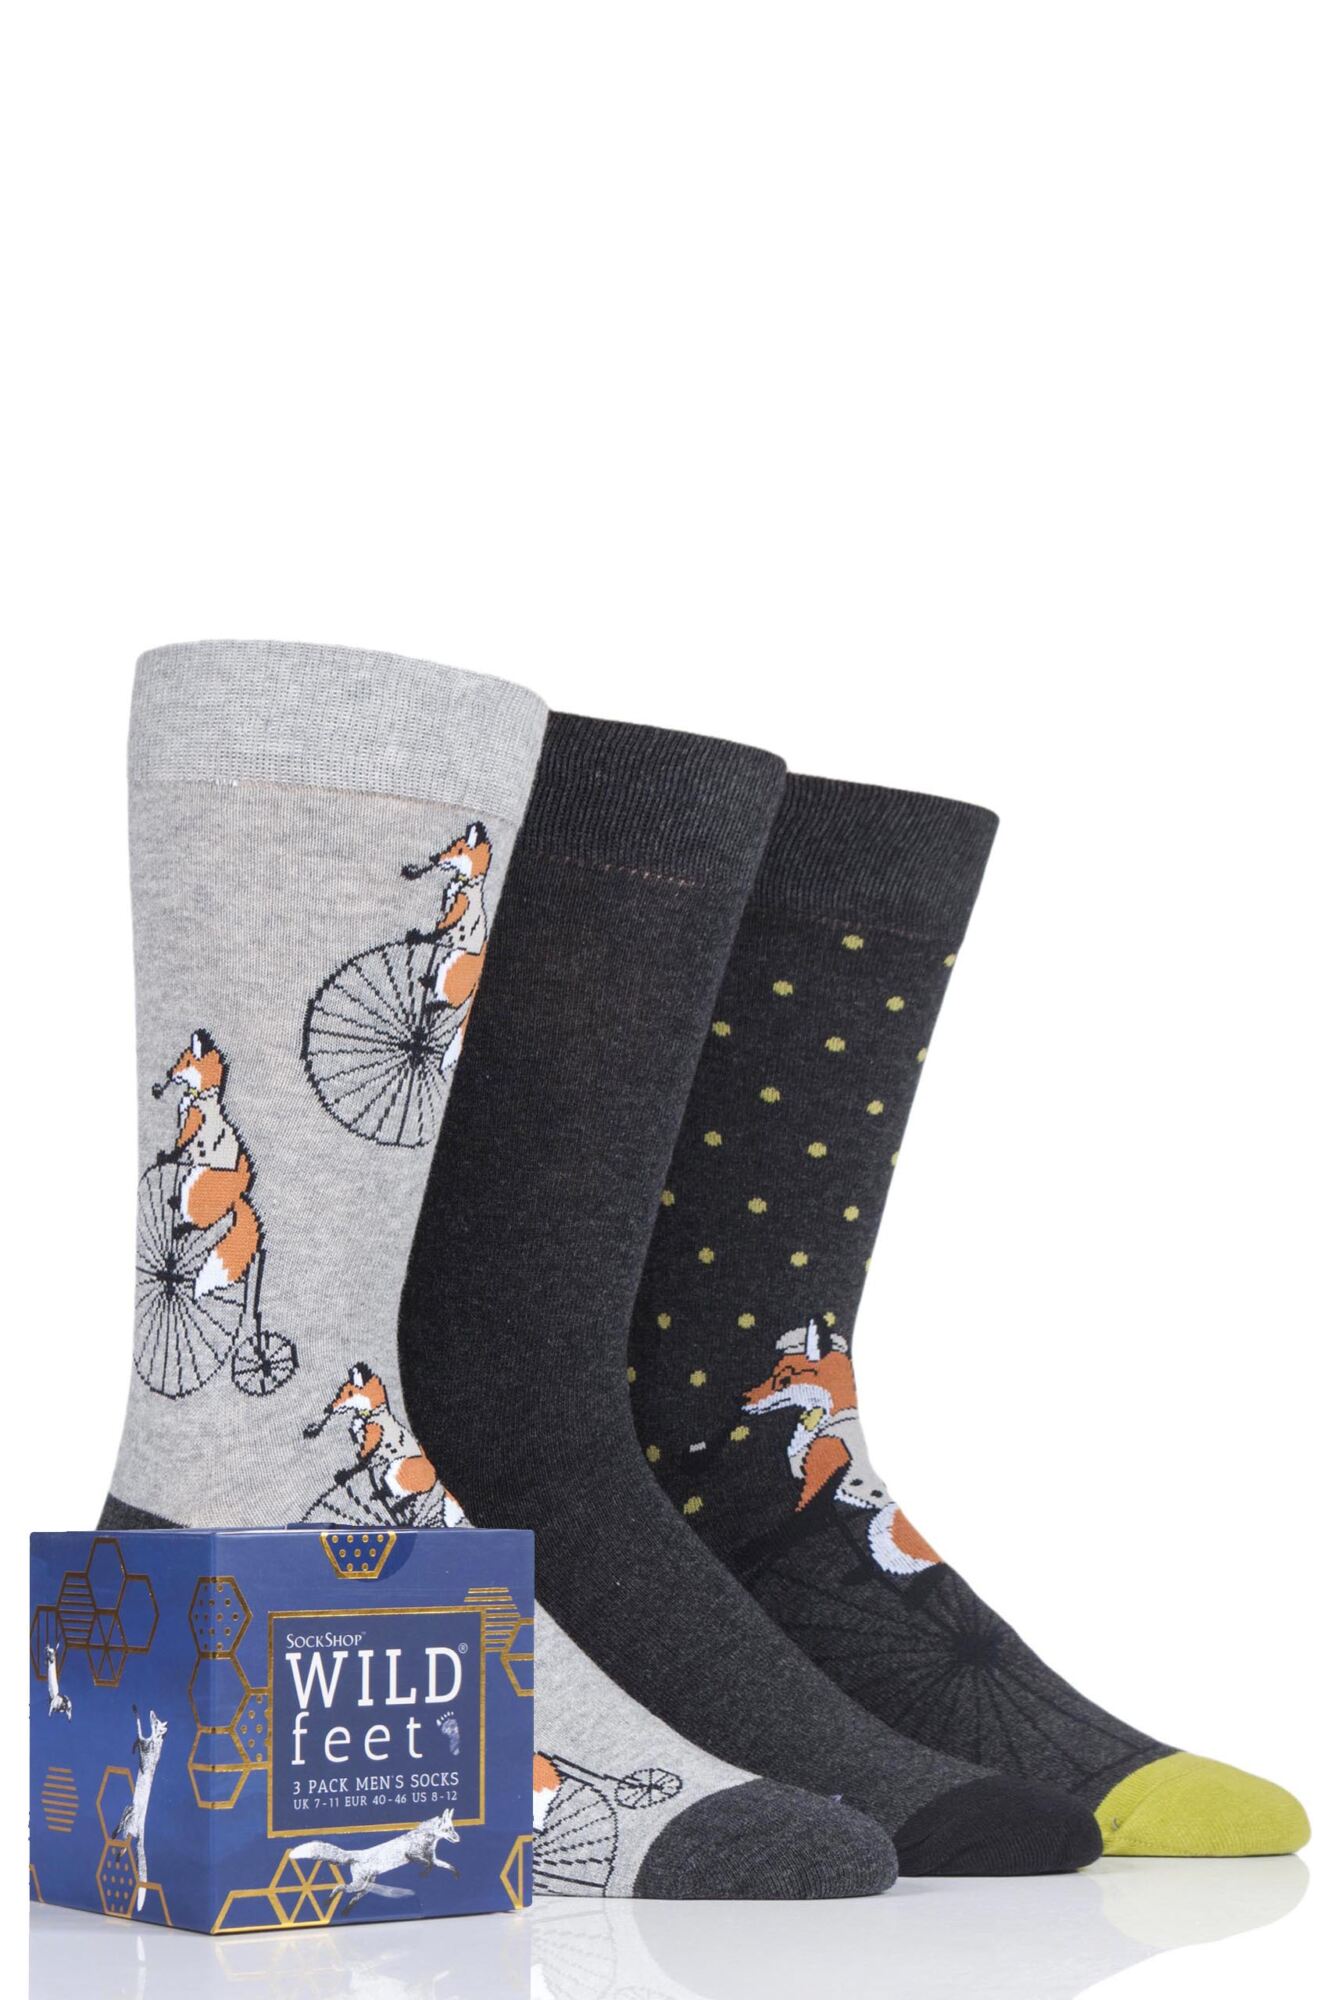 3 Pair Gift Boxed Novelty Cotton Socks Men's - Wild Feet